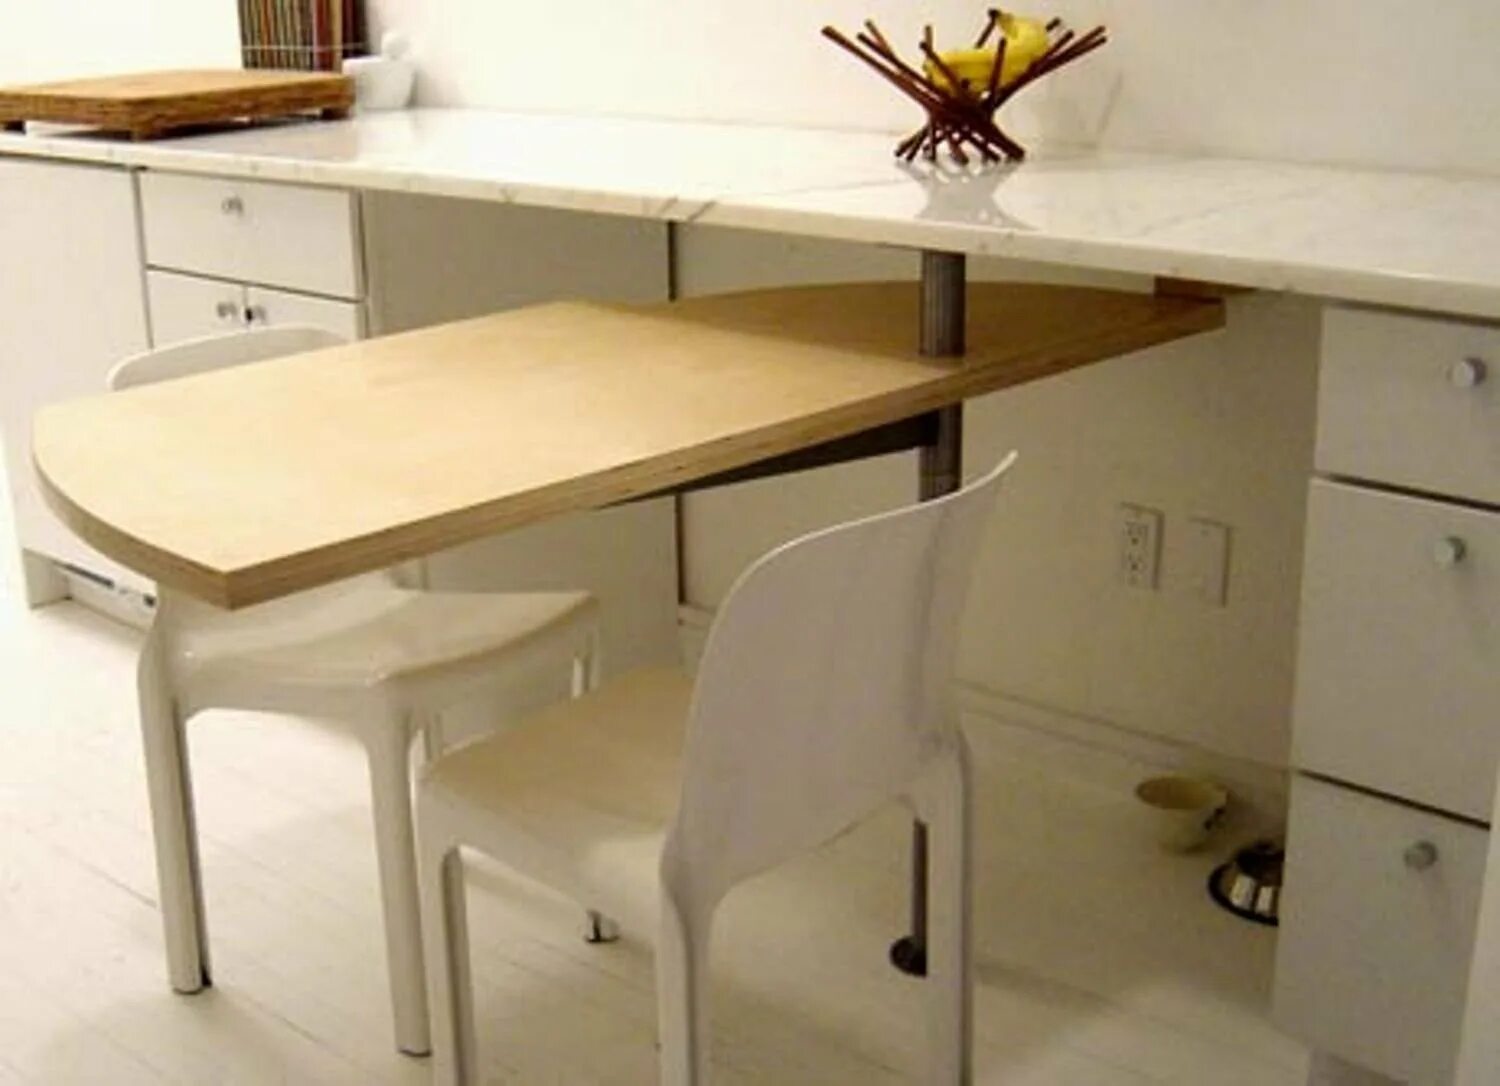 Давай в другой стол. Выдвижной стол. Выдвижной стол на кухне. Кухонный стол с выдвижной столешницей. Барная стойка с выдвижным столом.